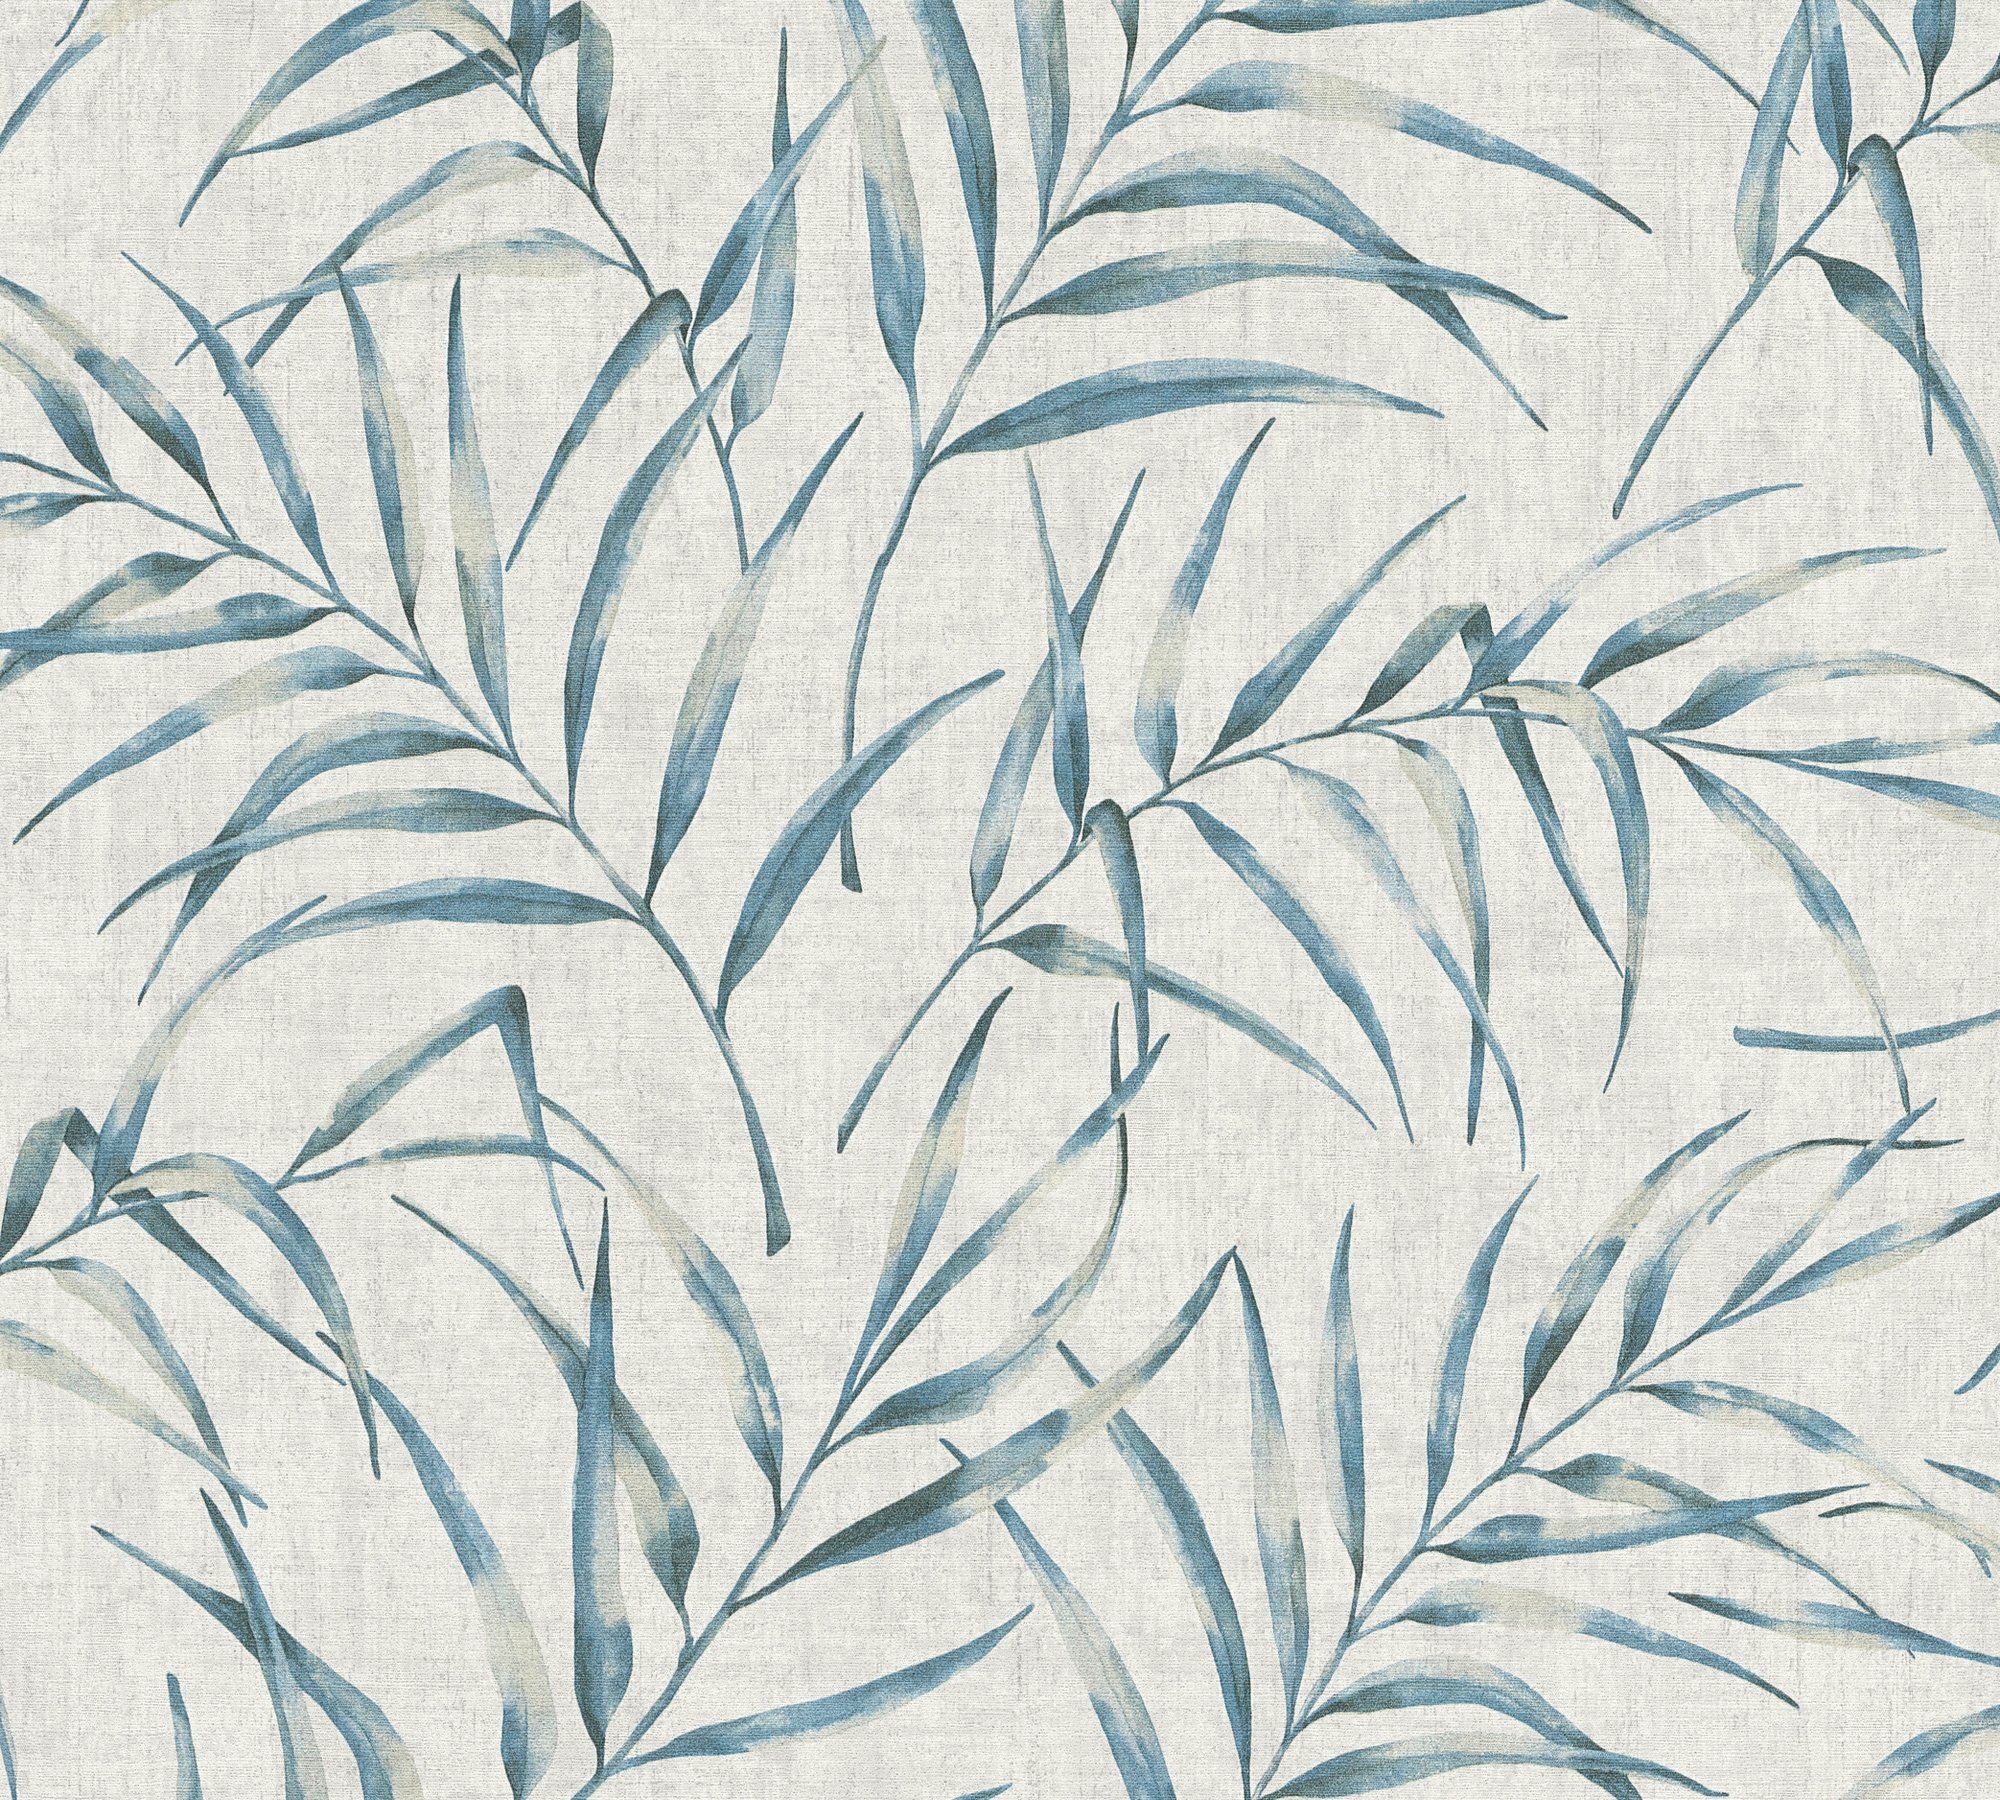 grau/blau in Greenery Palmen Palmenprint Dschungel Tapete Vliestapete A.S. Création mit Optik, floral, Dschungeltapete